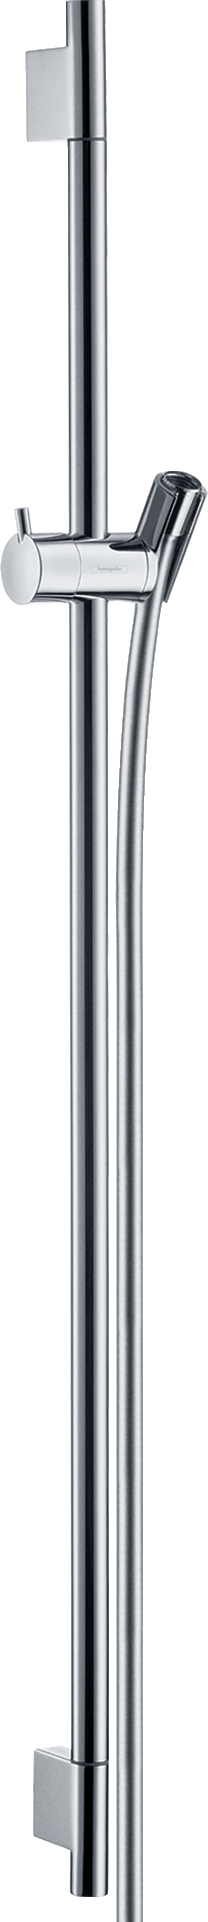 Unica Shower bar S Puro 90 cm with Isiflex shower hose 160 cm